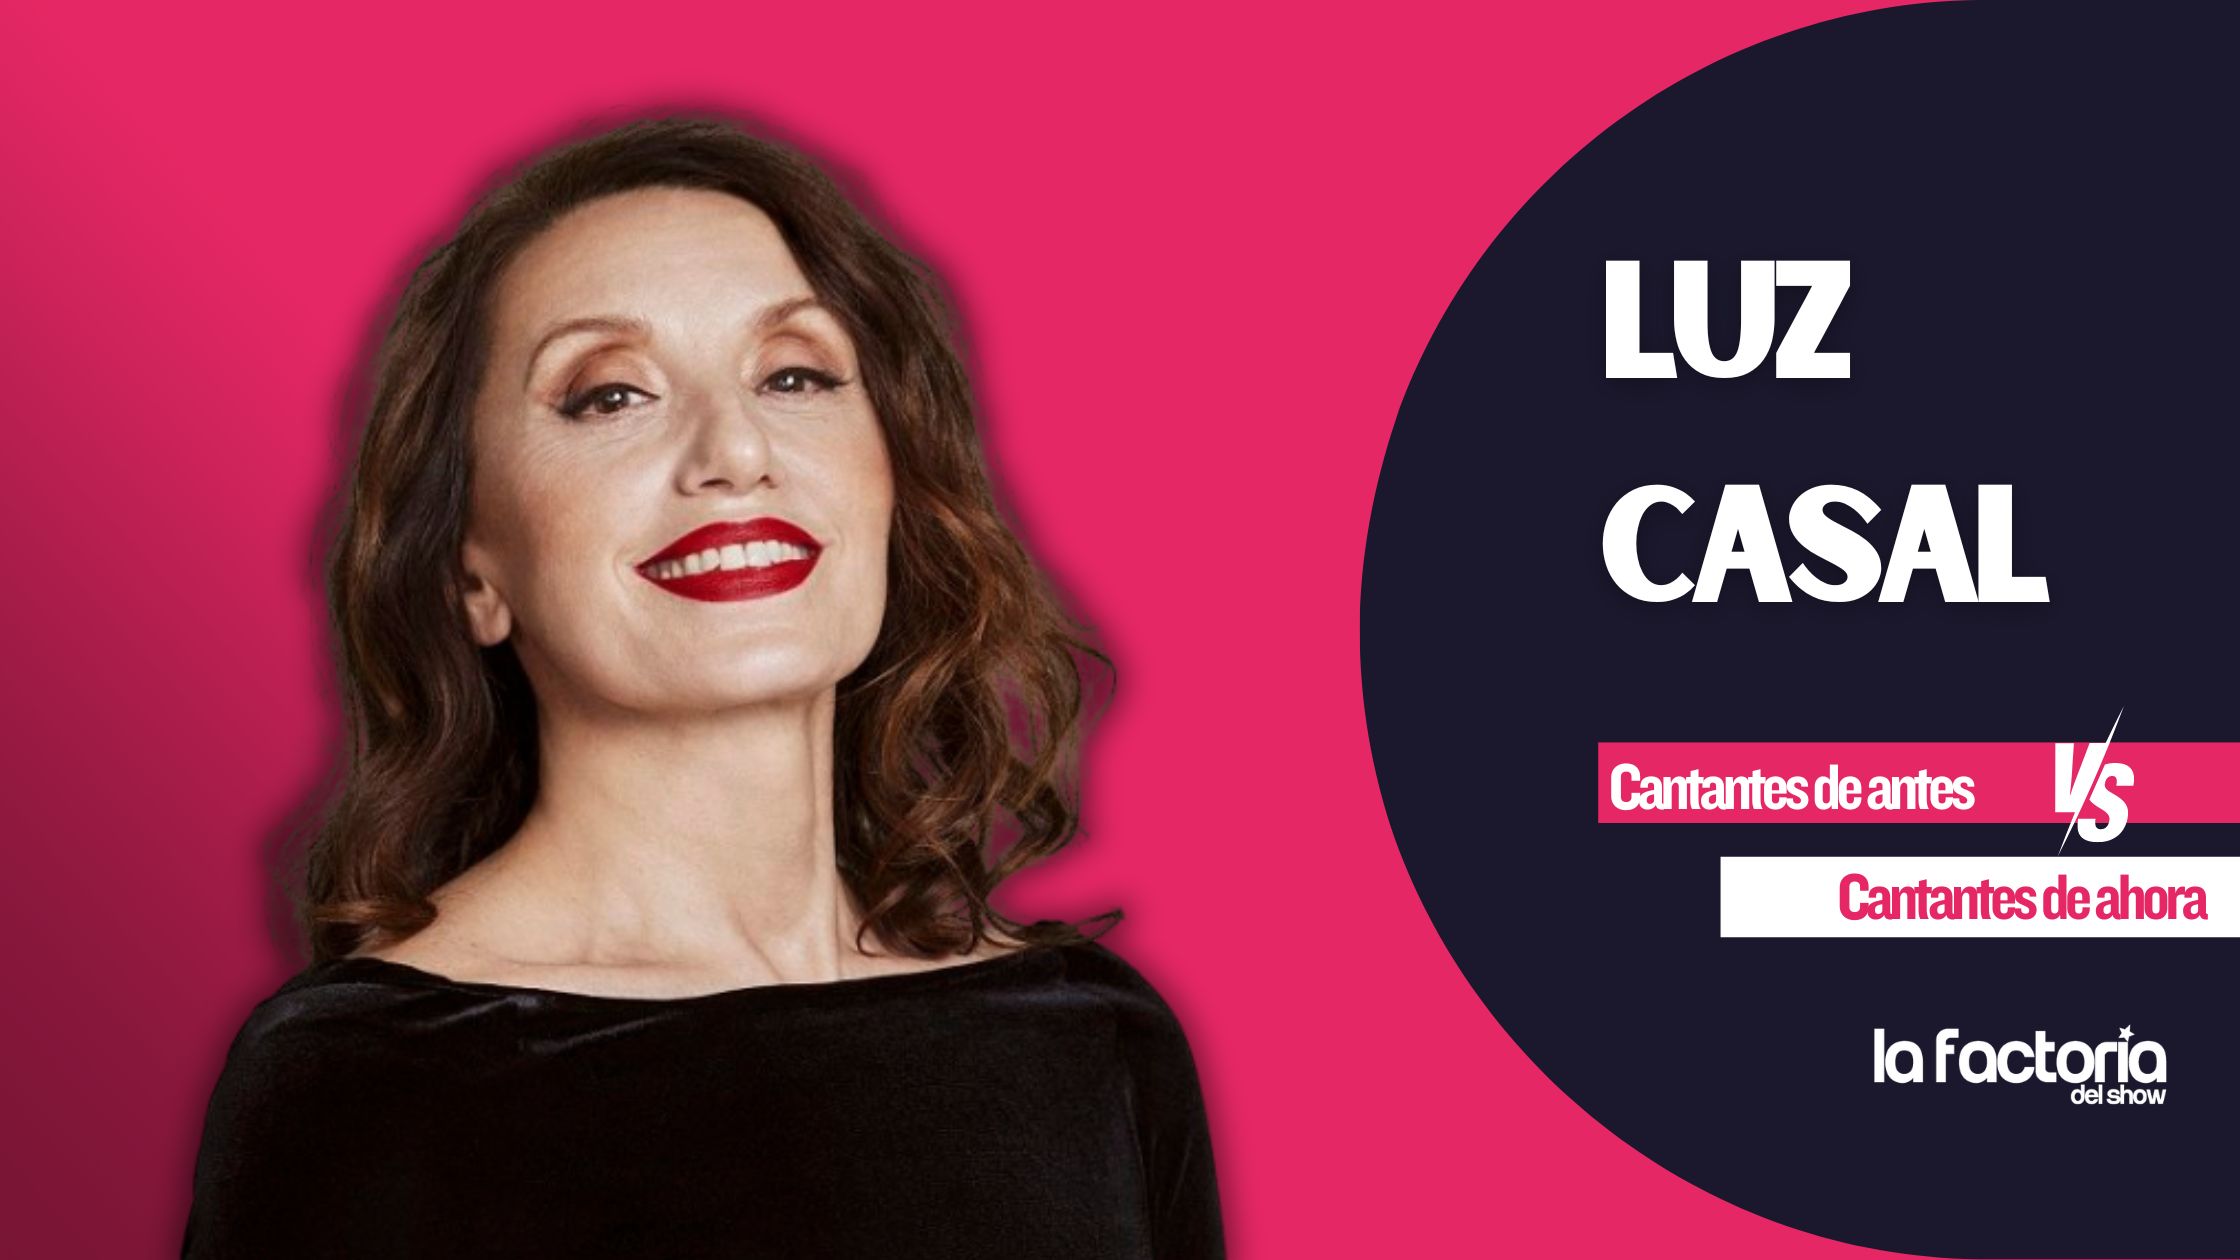 Luz Casal es una de las cantantes españoles más importantes de nuestra música. 